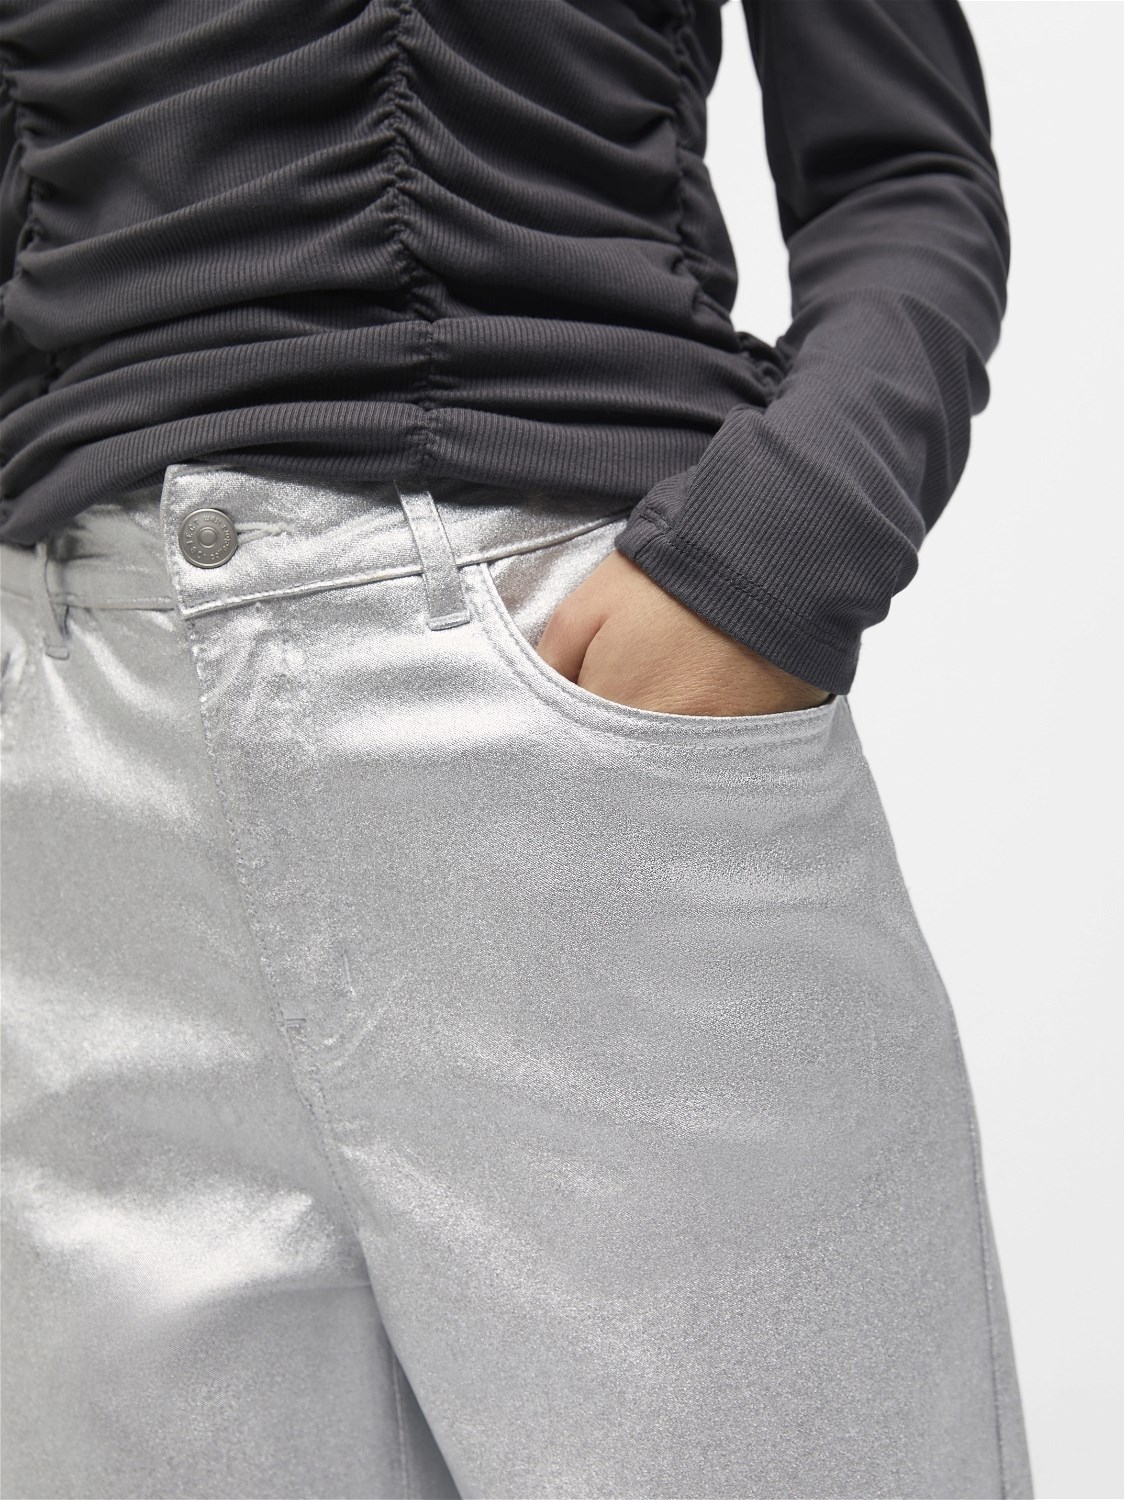 Pantalón Sunny metalizado en plata. Marca Object.